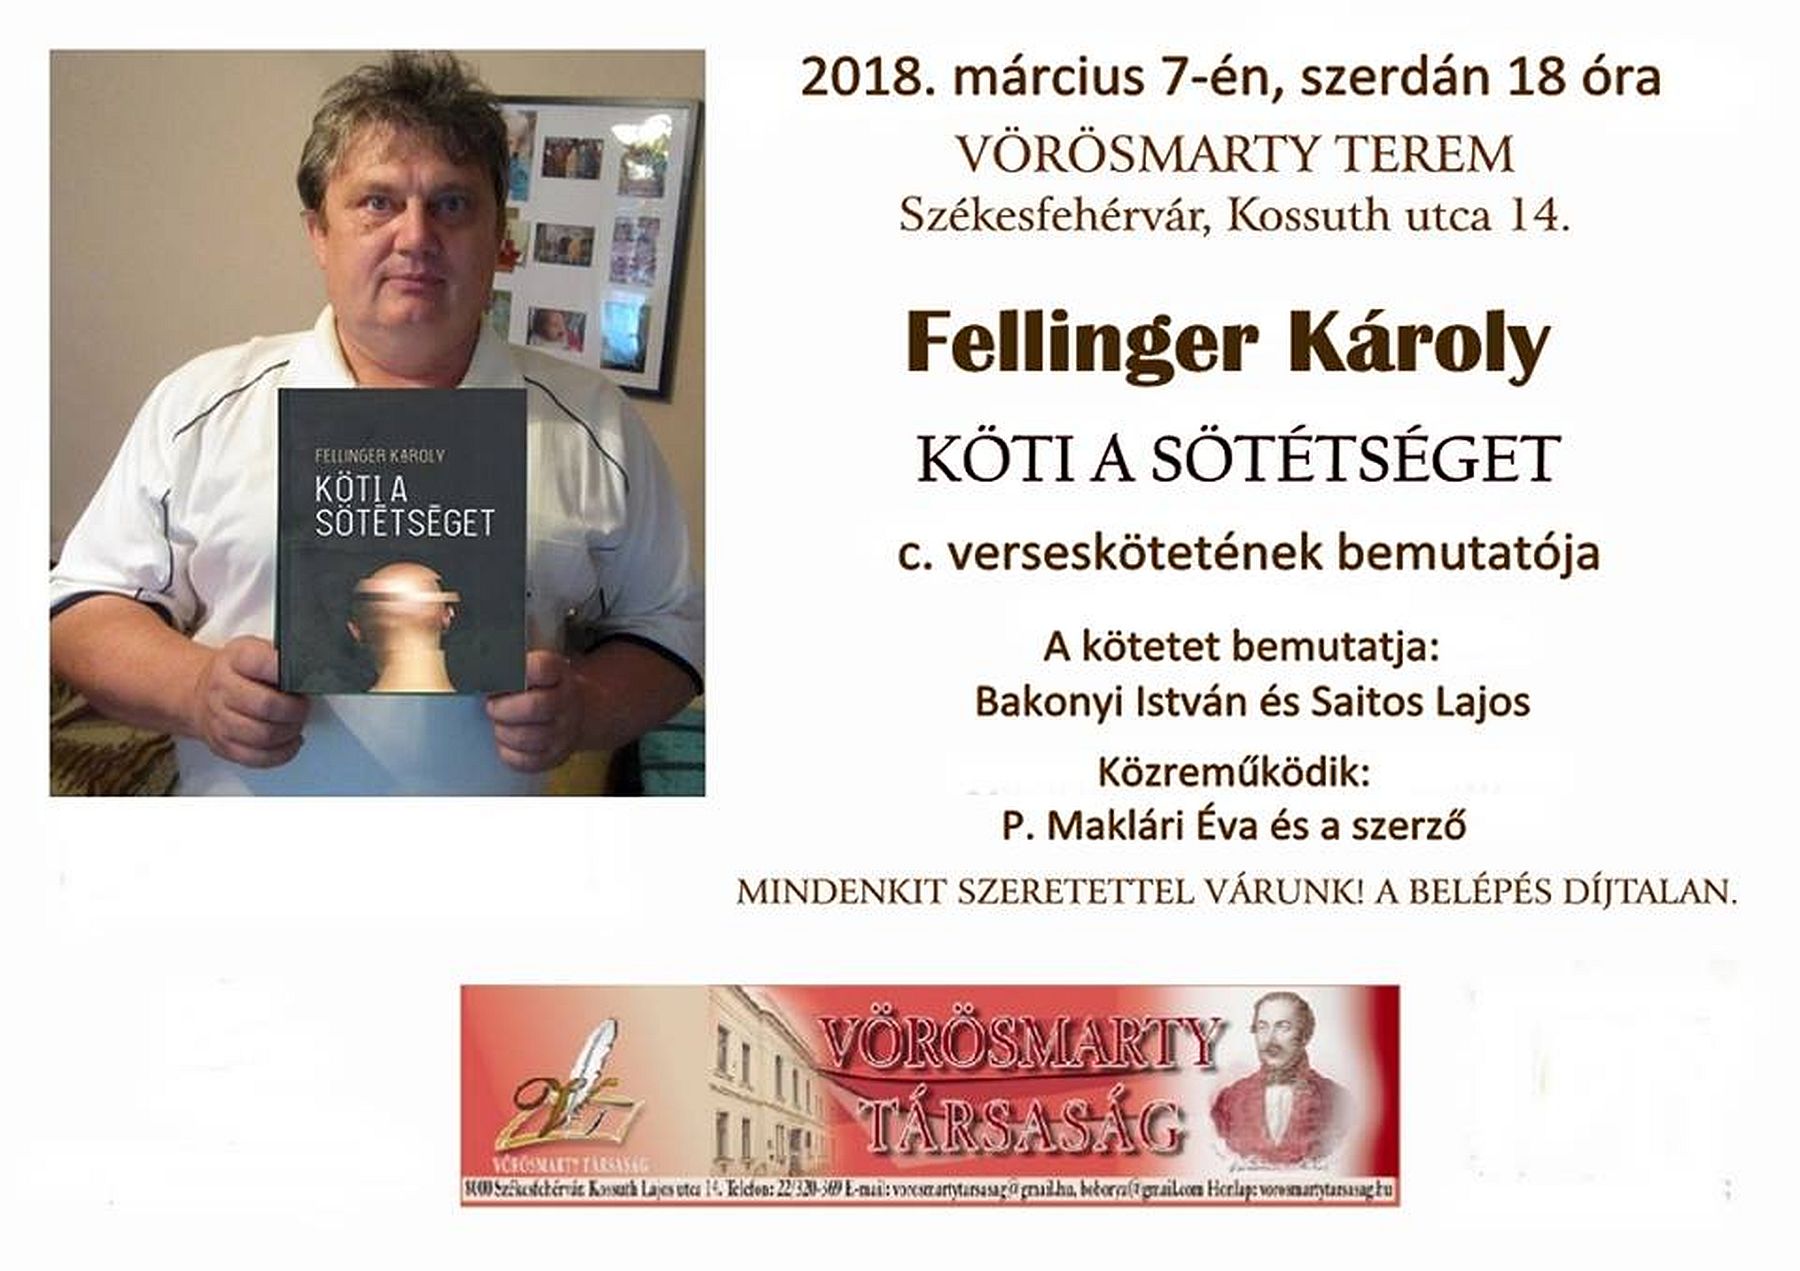 Fellinger Károly: Köti a sötétséget - verskötet bemutató a Vörösmarty Teremben